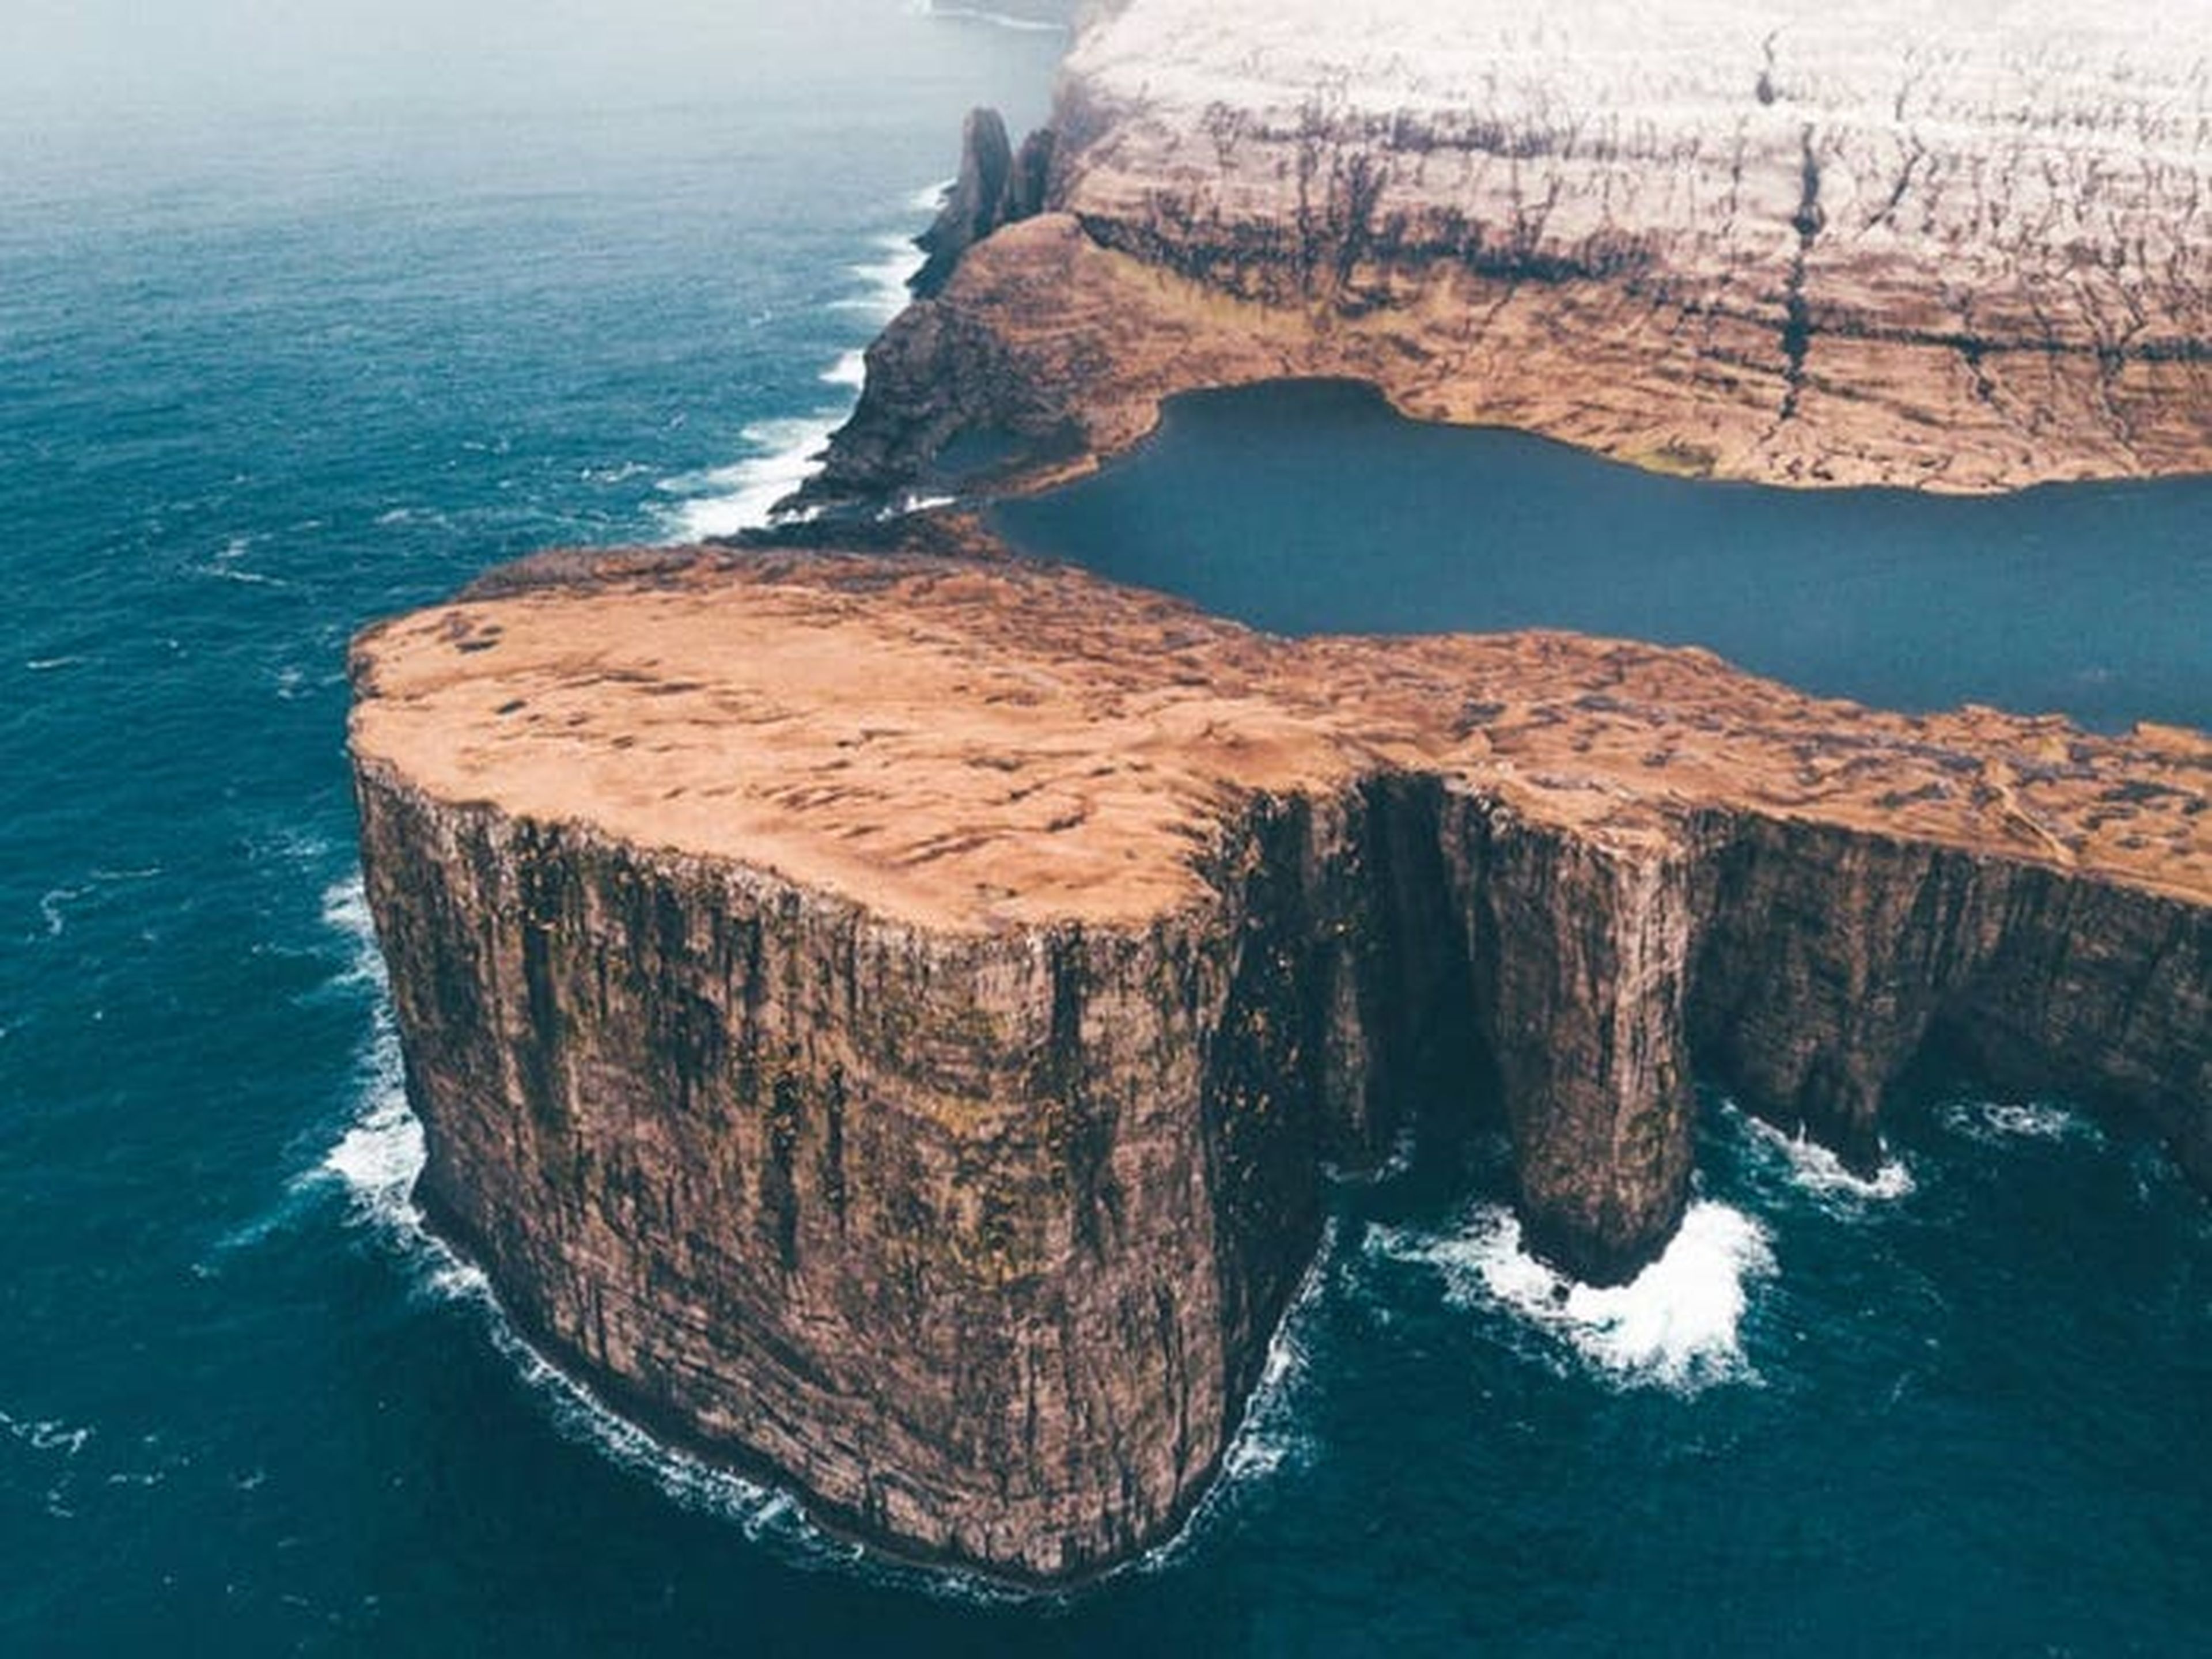 Algunas imágenes parecen surrealistas, como esta de las Islas Feroe, donde se ve un lago en lo alto de un acantilado.